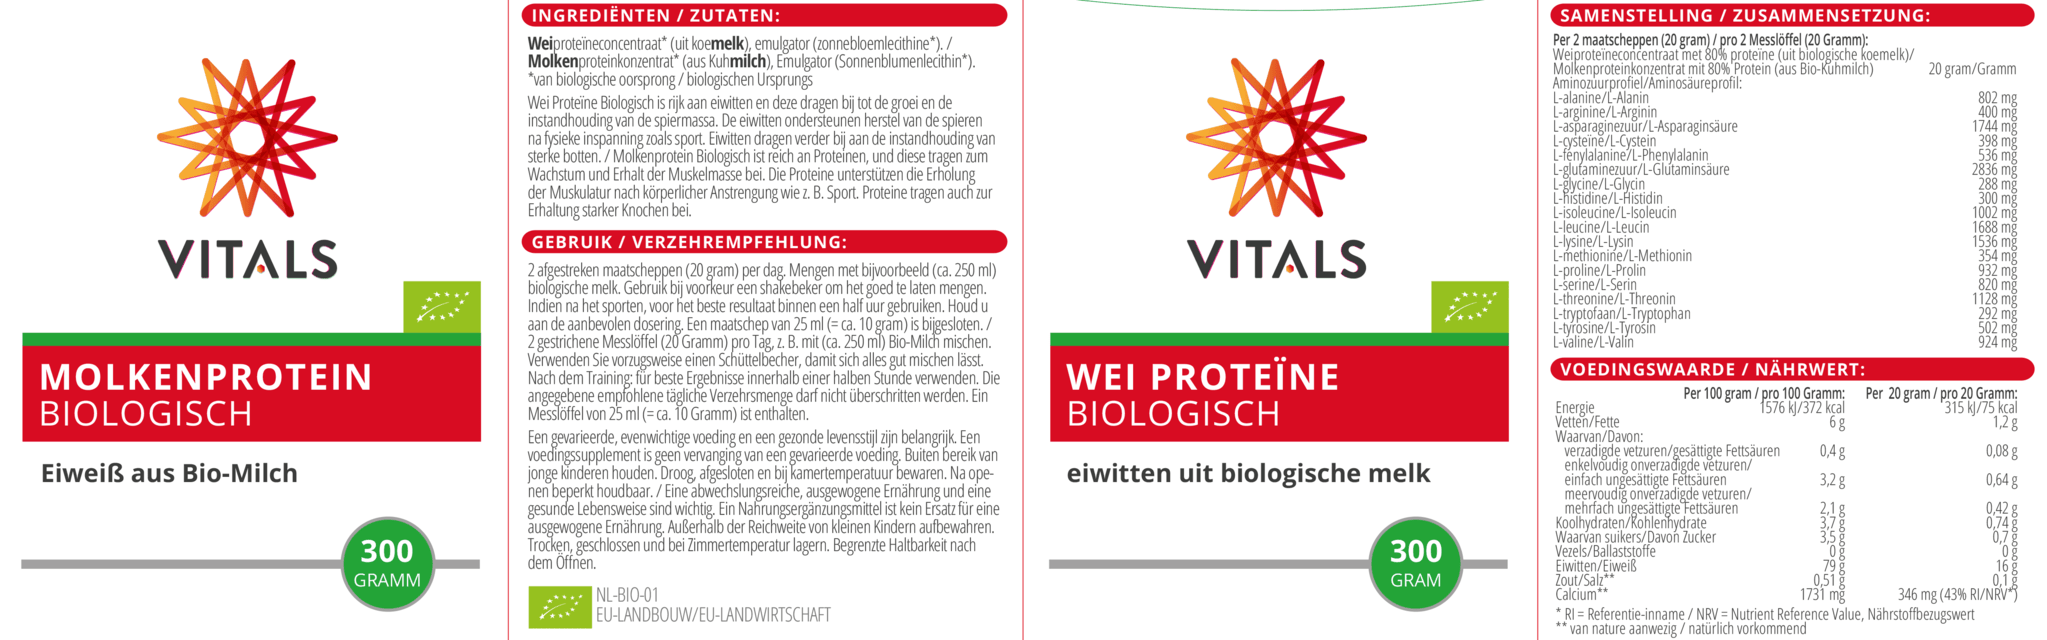 Wei proteine bio - NowVitamins - Vitals - 8716717003709